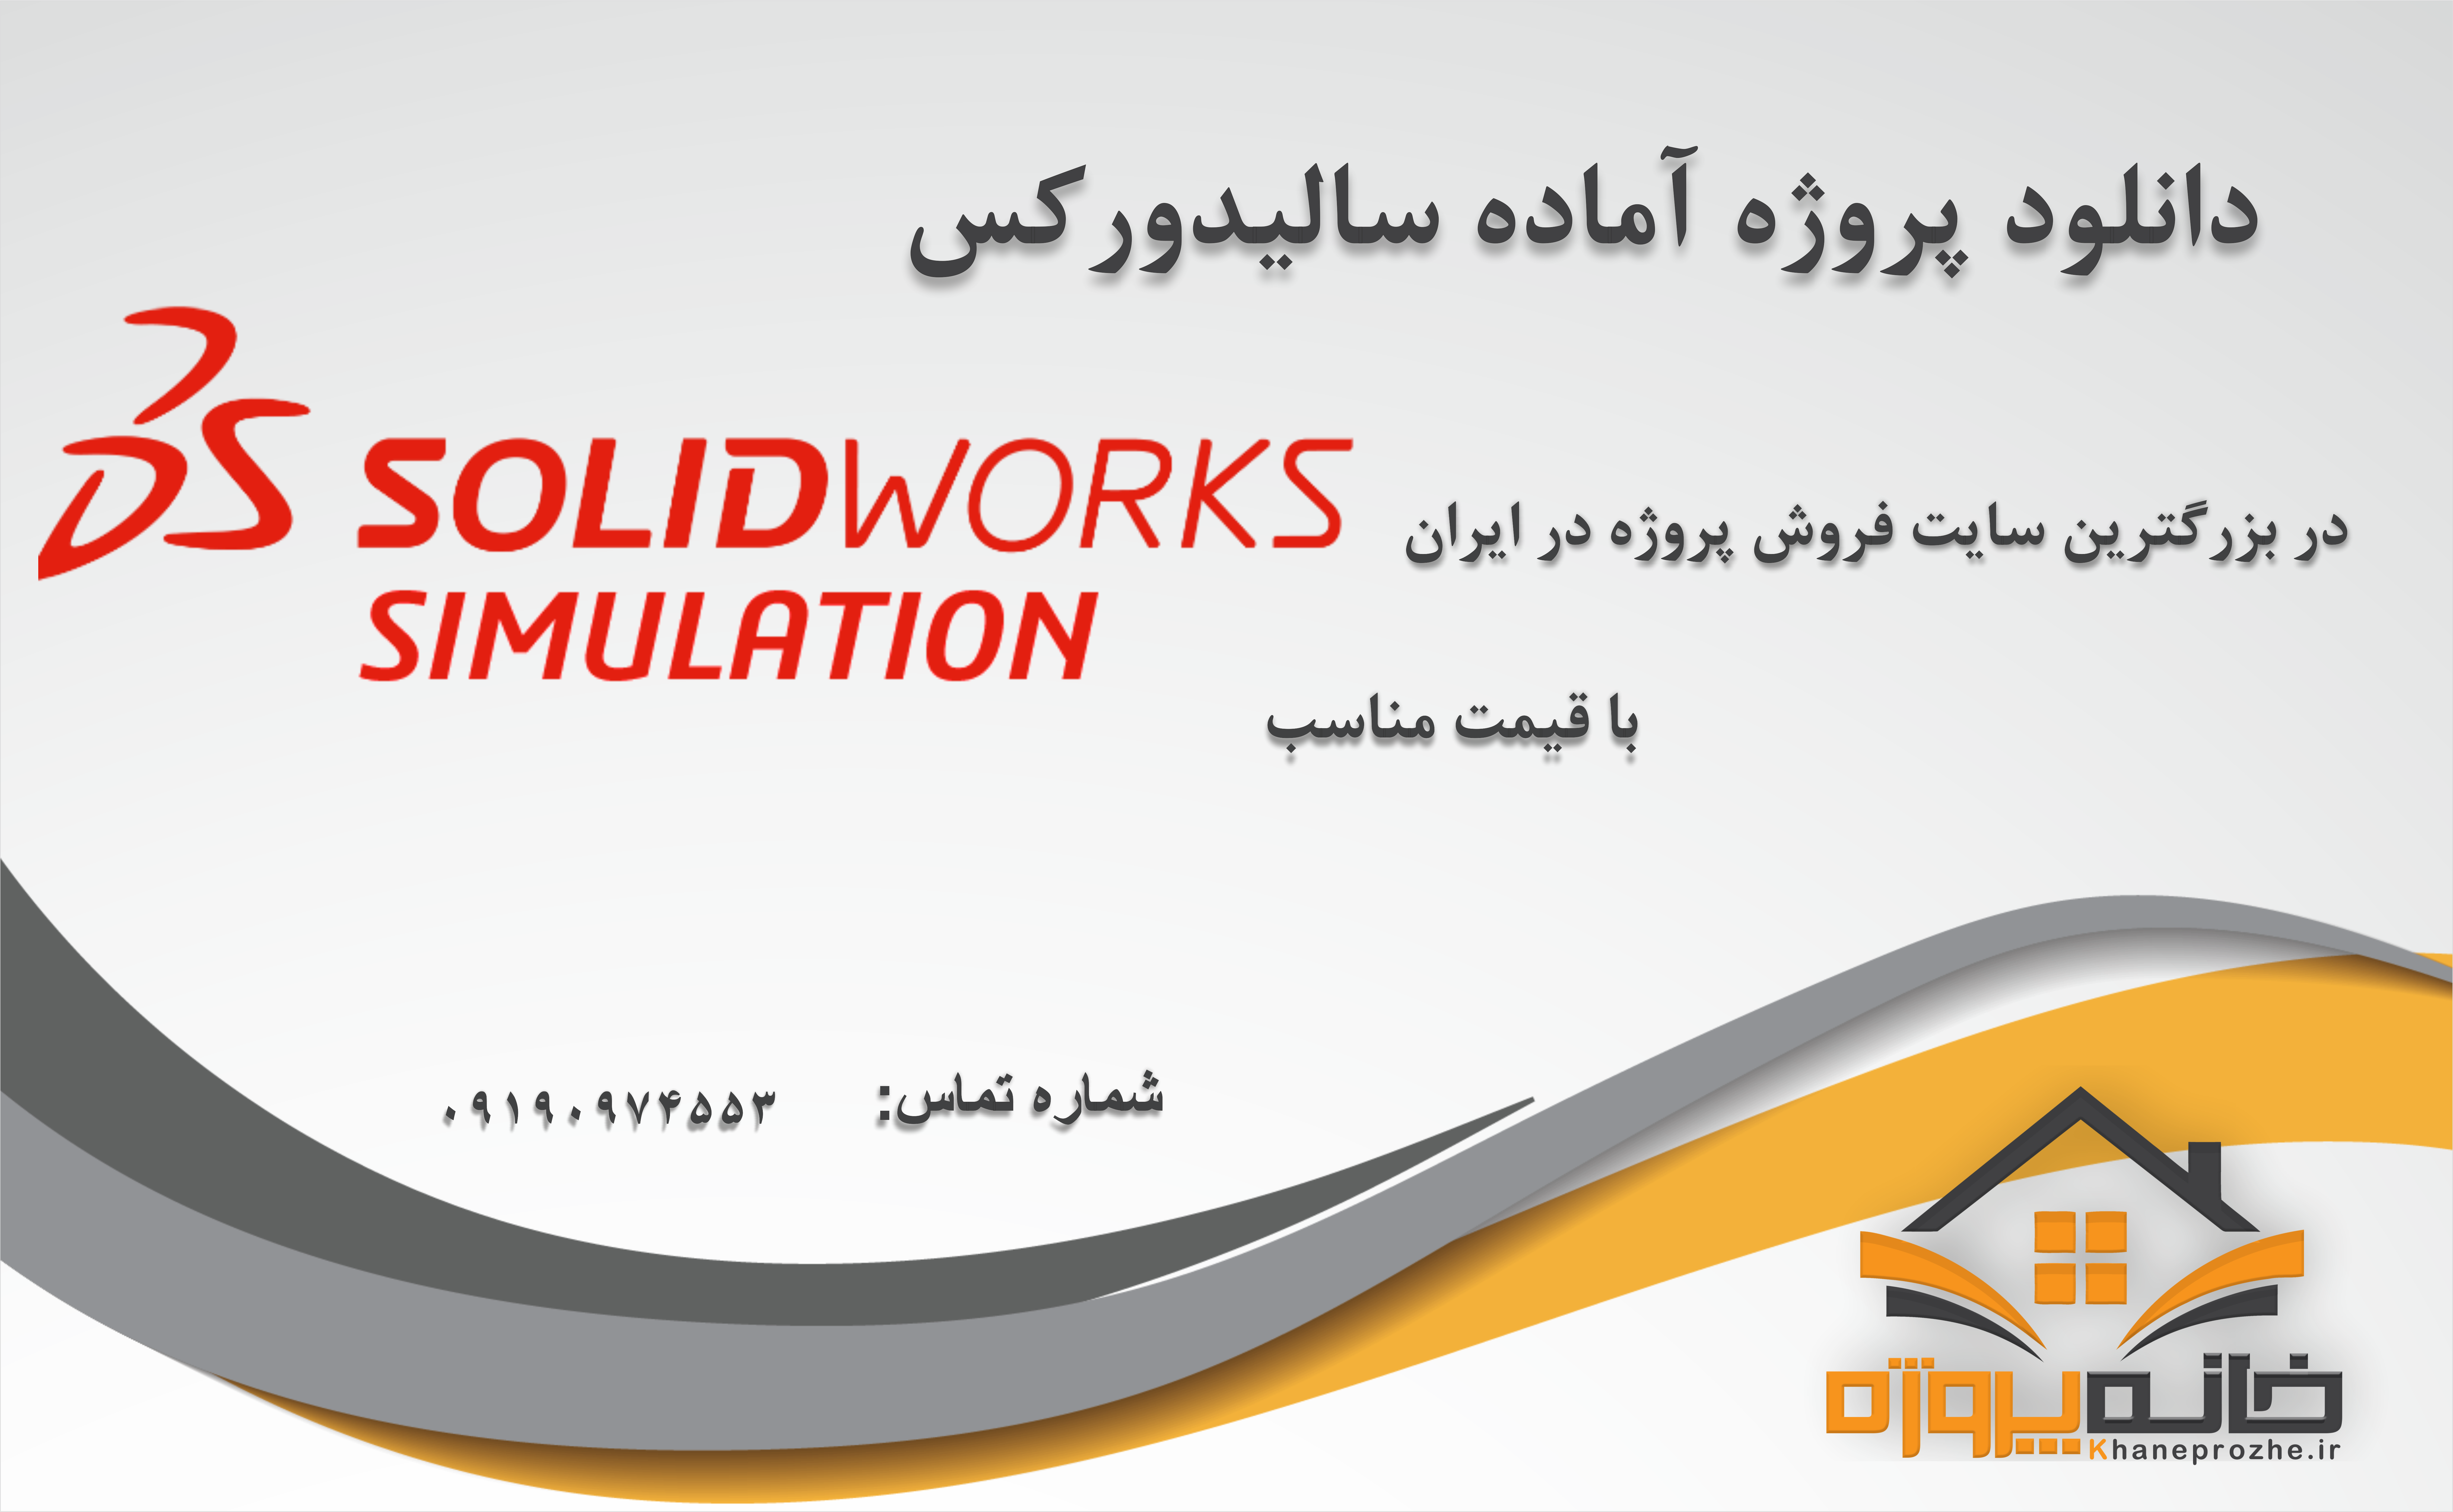 پروژه های آماده سالیدورکس (SolidWorks)